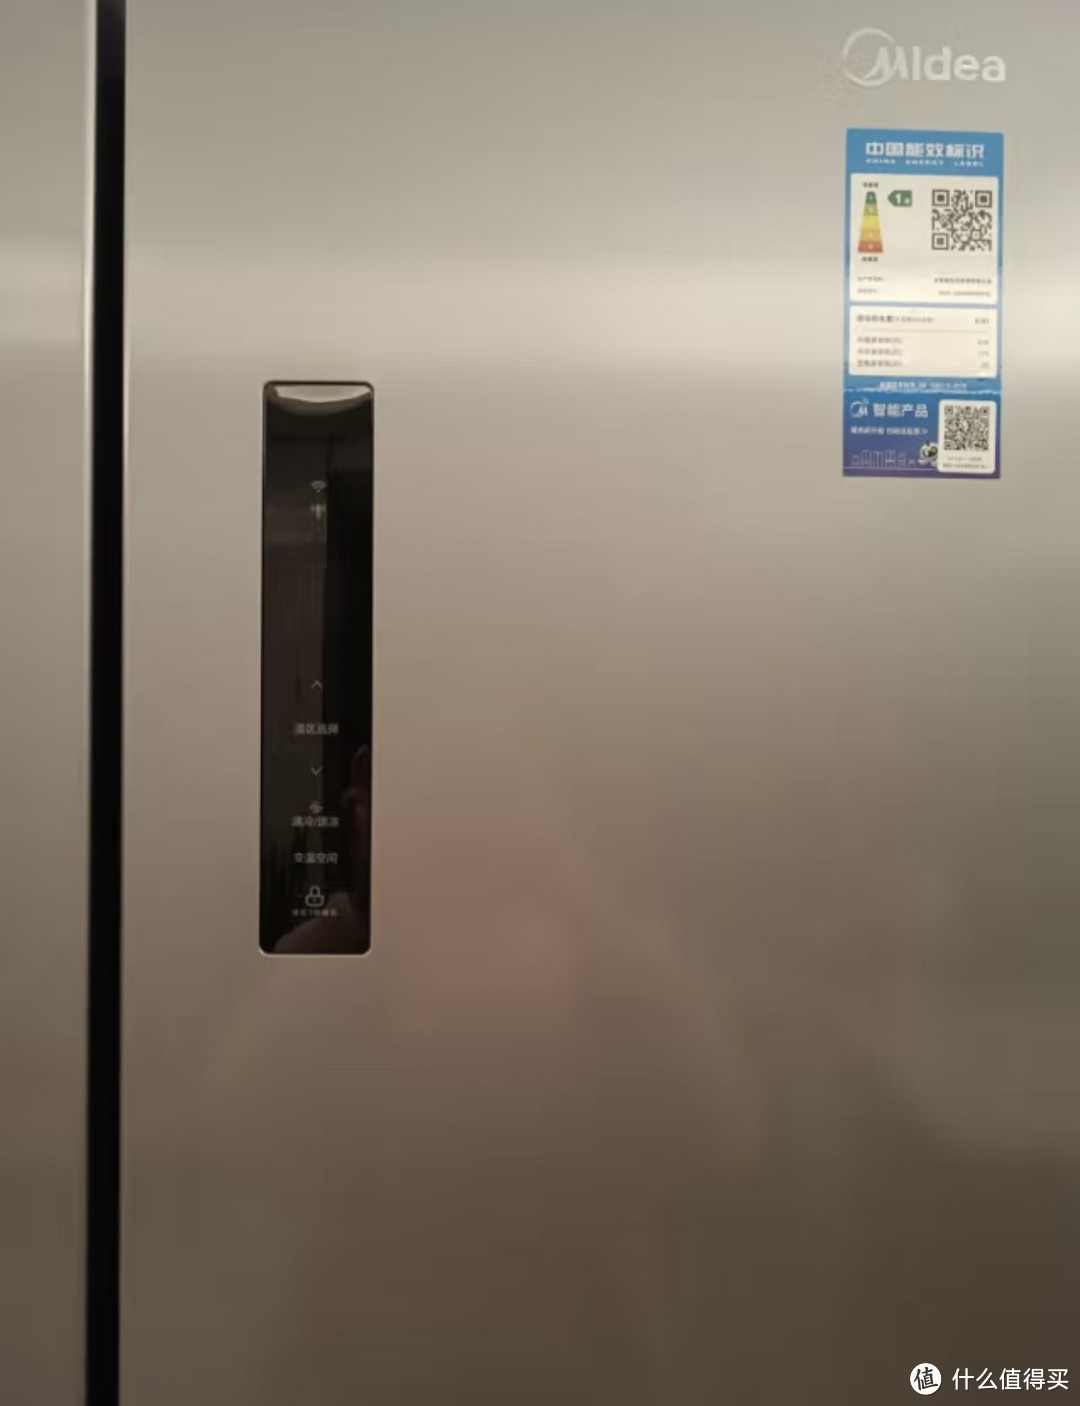 推荐一款高性能的大家电-美的冰箱